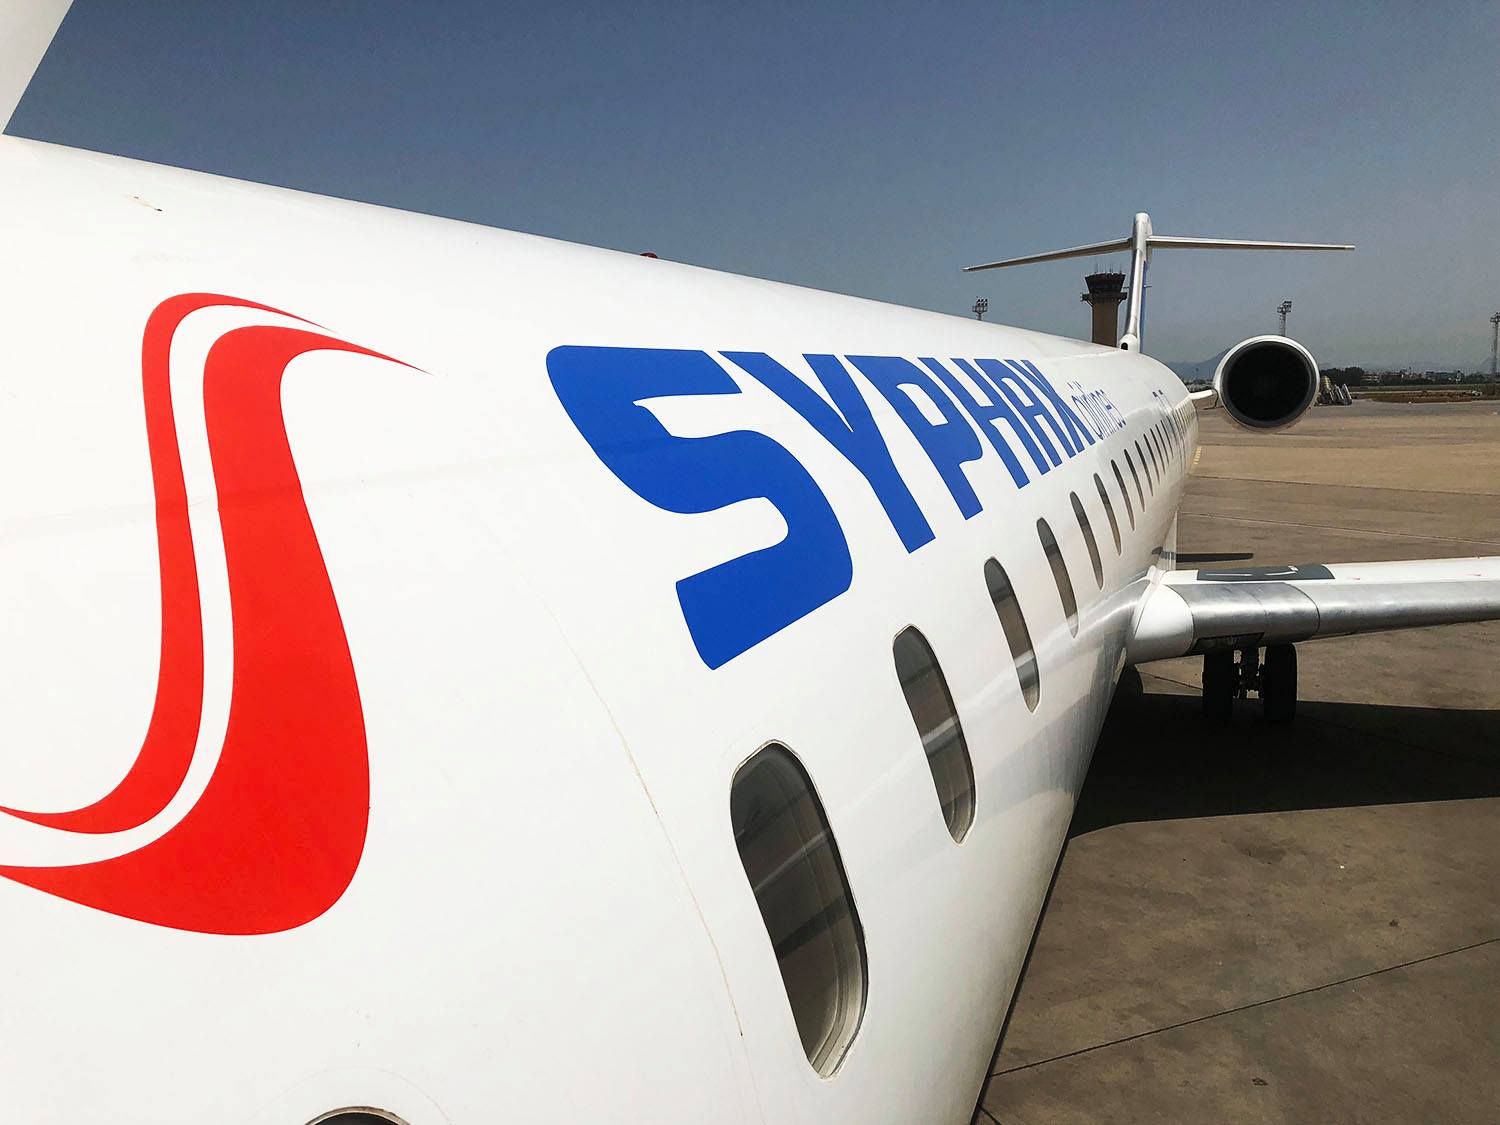 اولى الطائرات الجديدة لشركة شركة سيفاكس تصل الى تونس وتدخل ضمن الاسطول الجوي التونسي